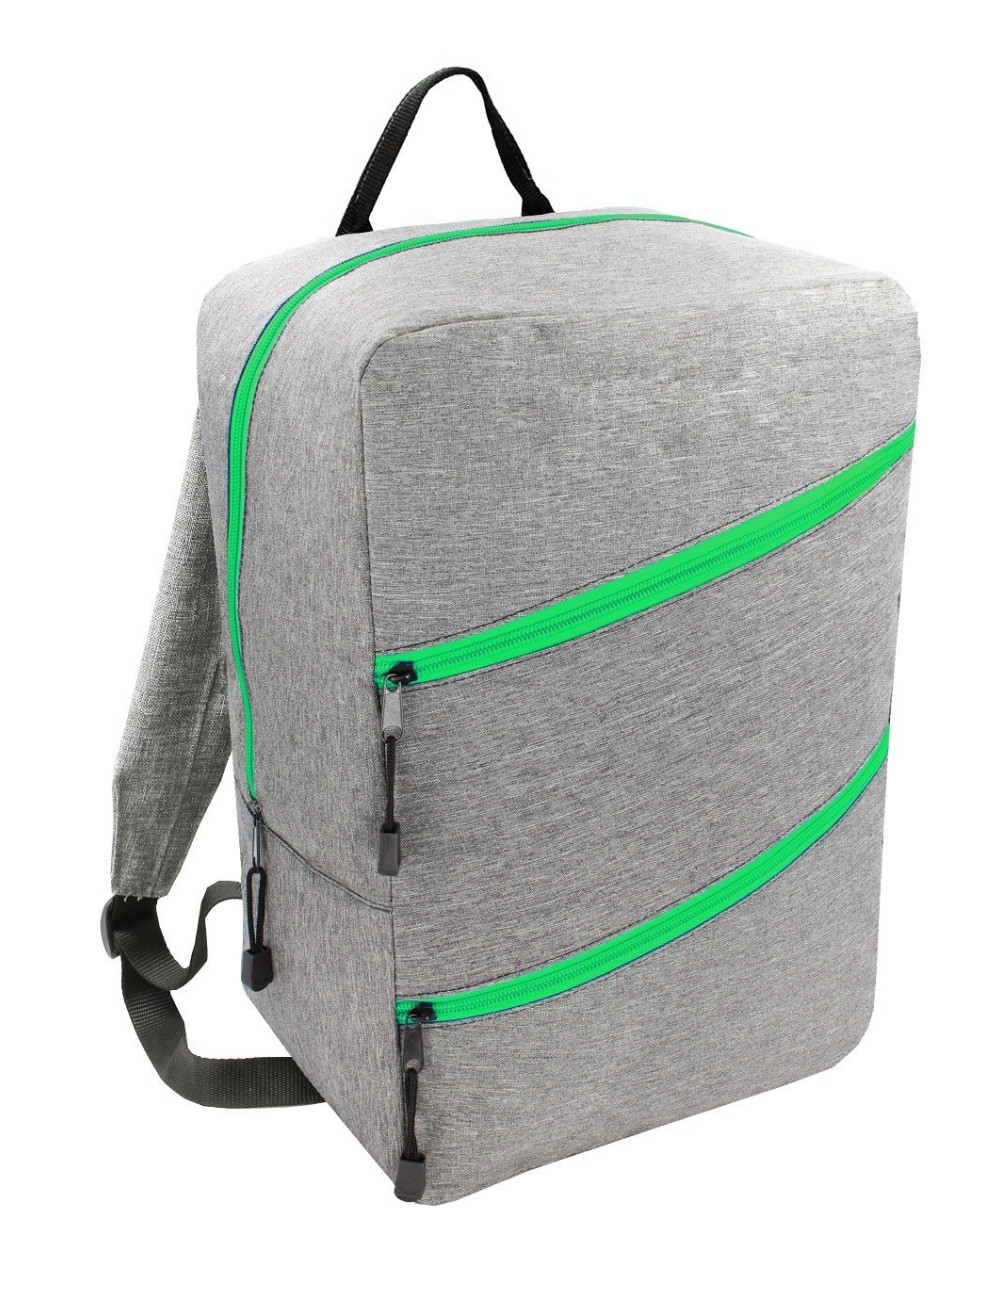 Plecak Torba WIZZAIR 40x30x20 bagaż podręczny 43 - szary z zielonym zamkiem